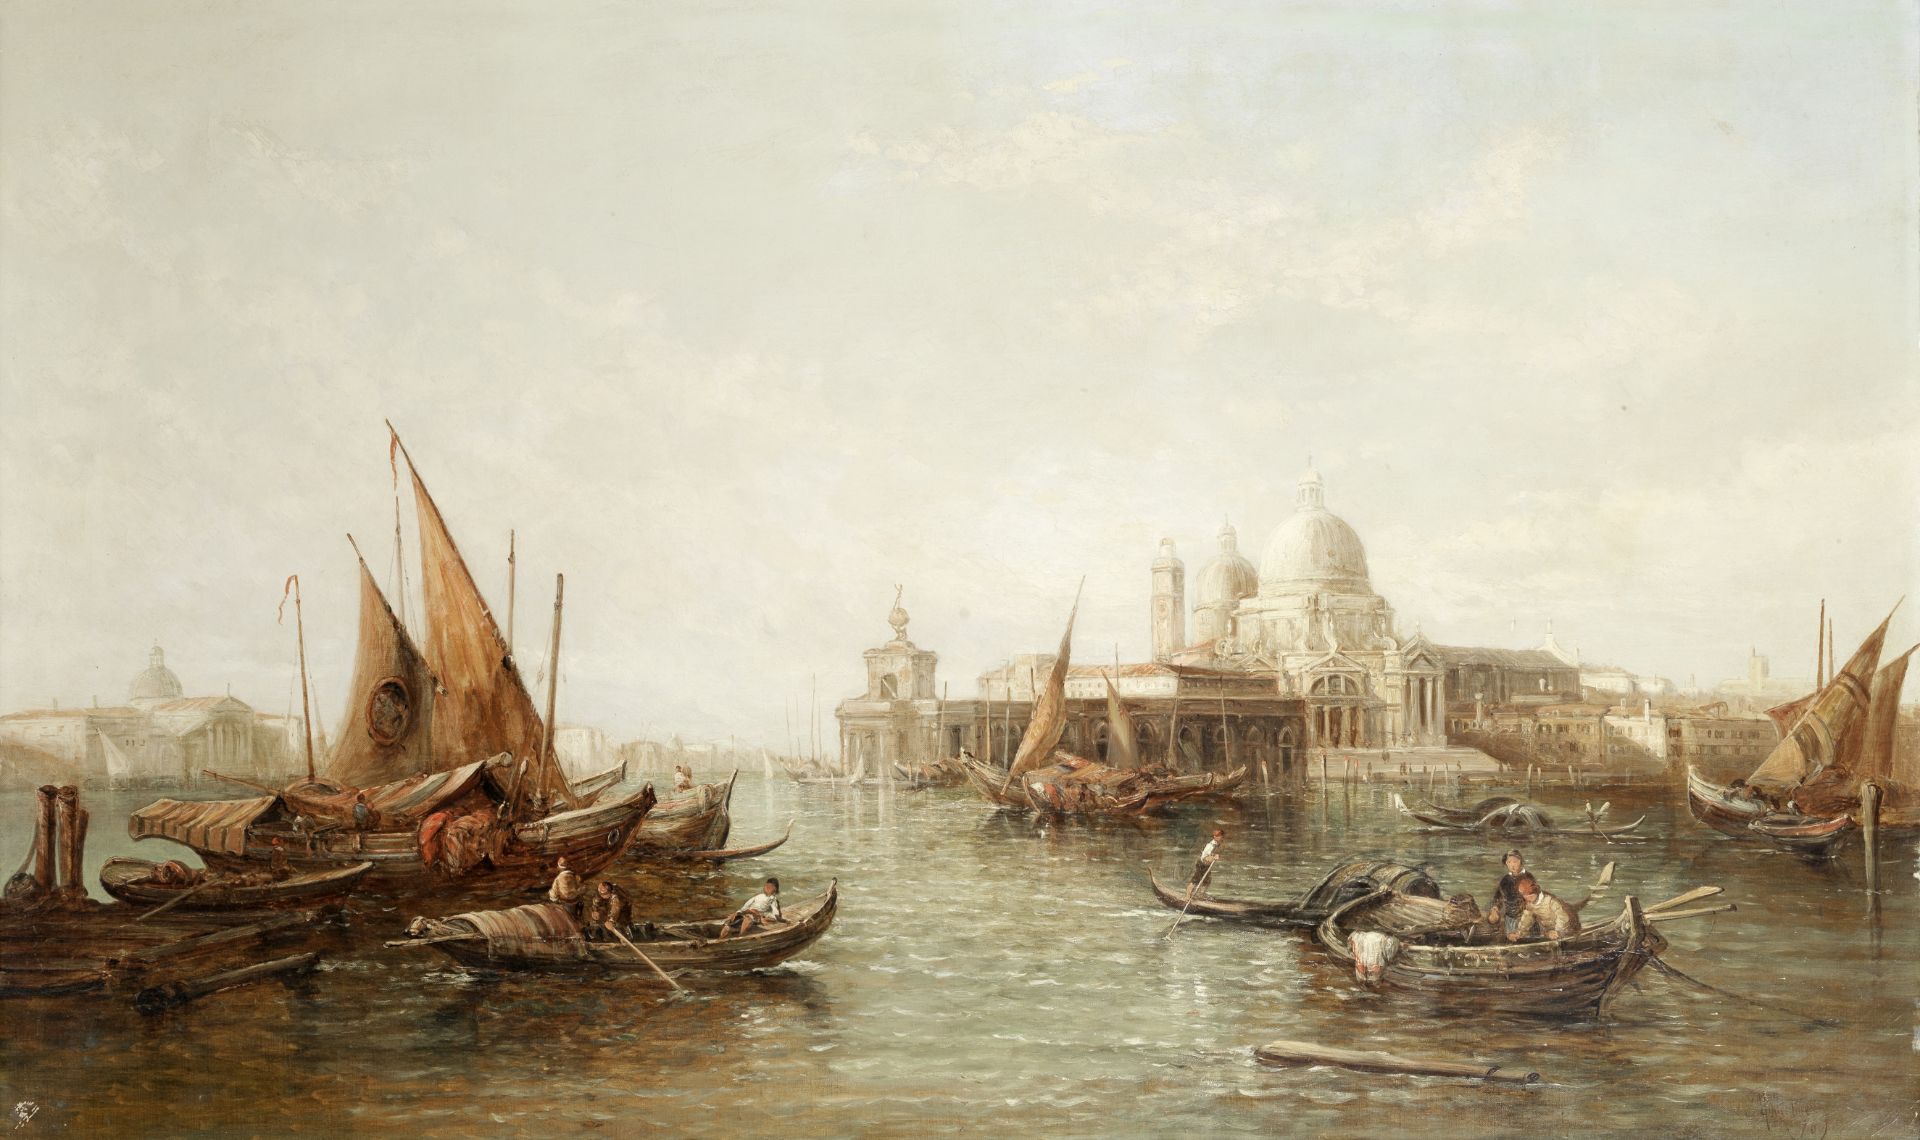 Alfred Pollentine (British, 1836-1890) A busy venetian waterway